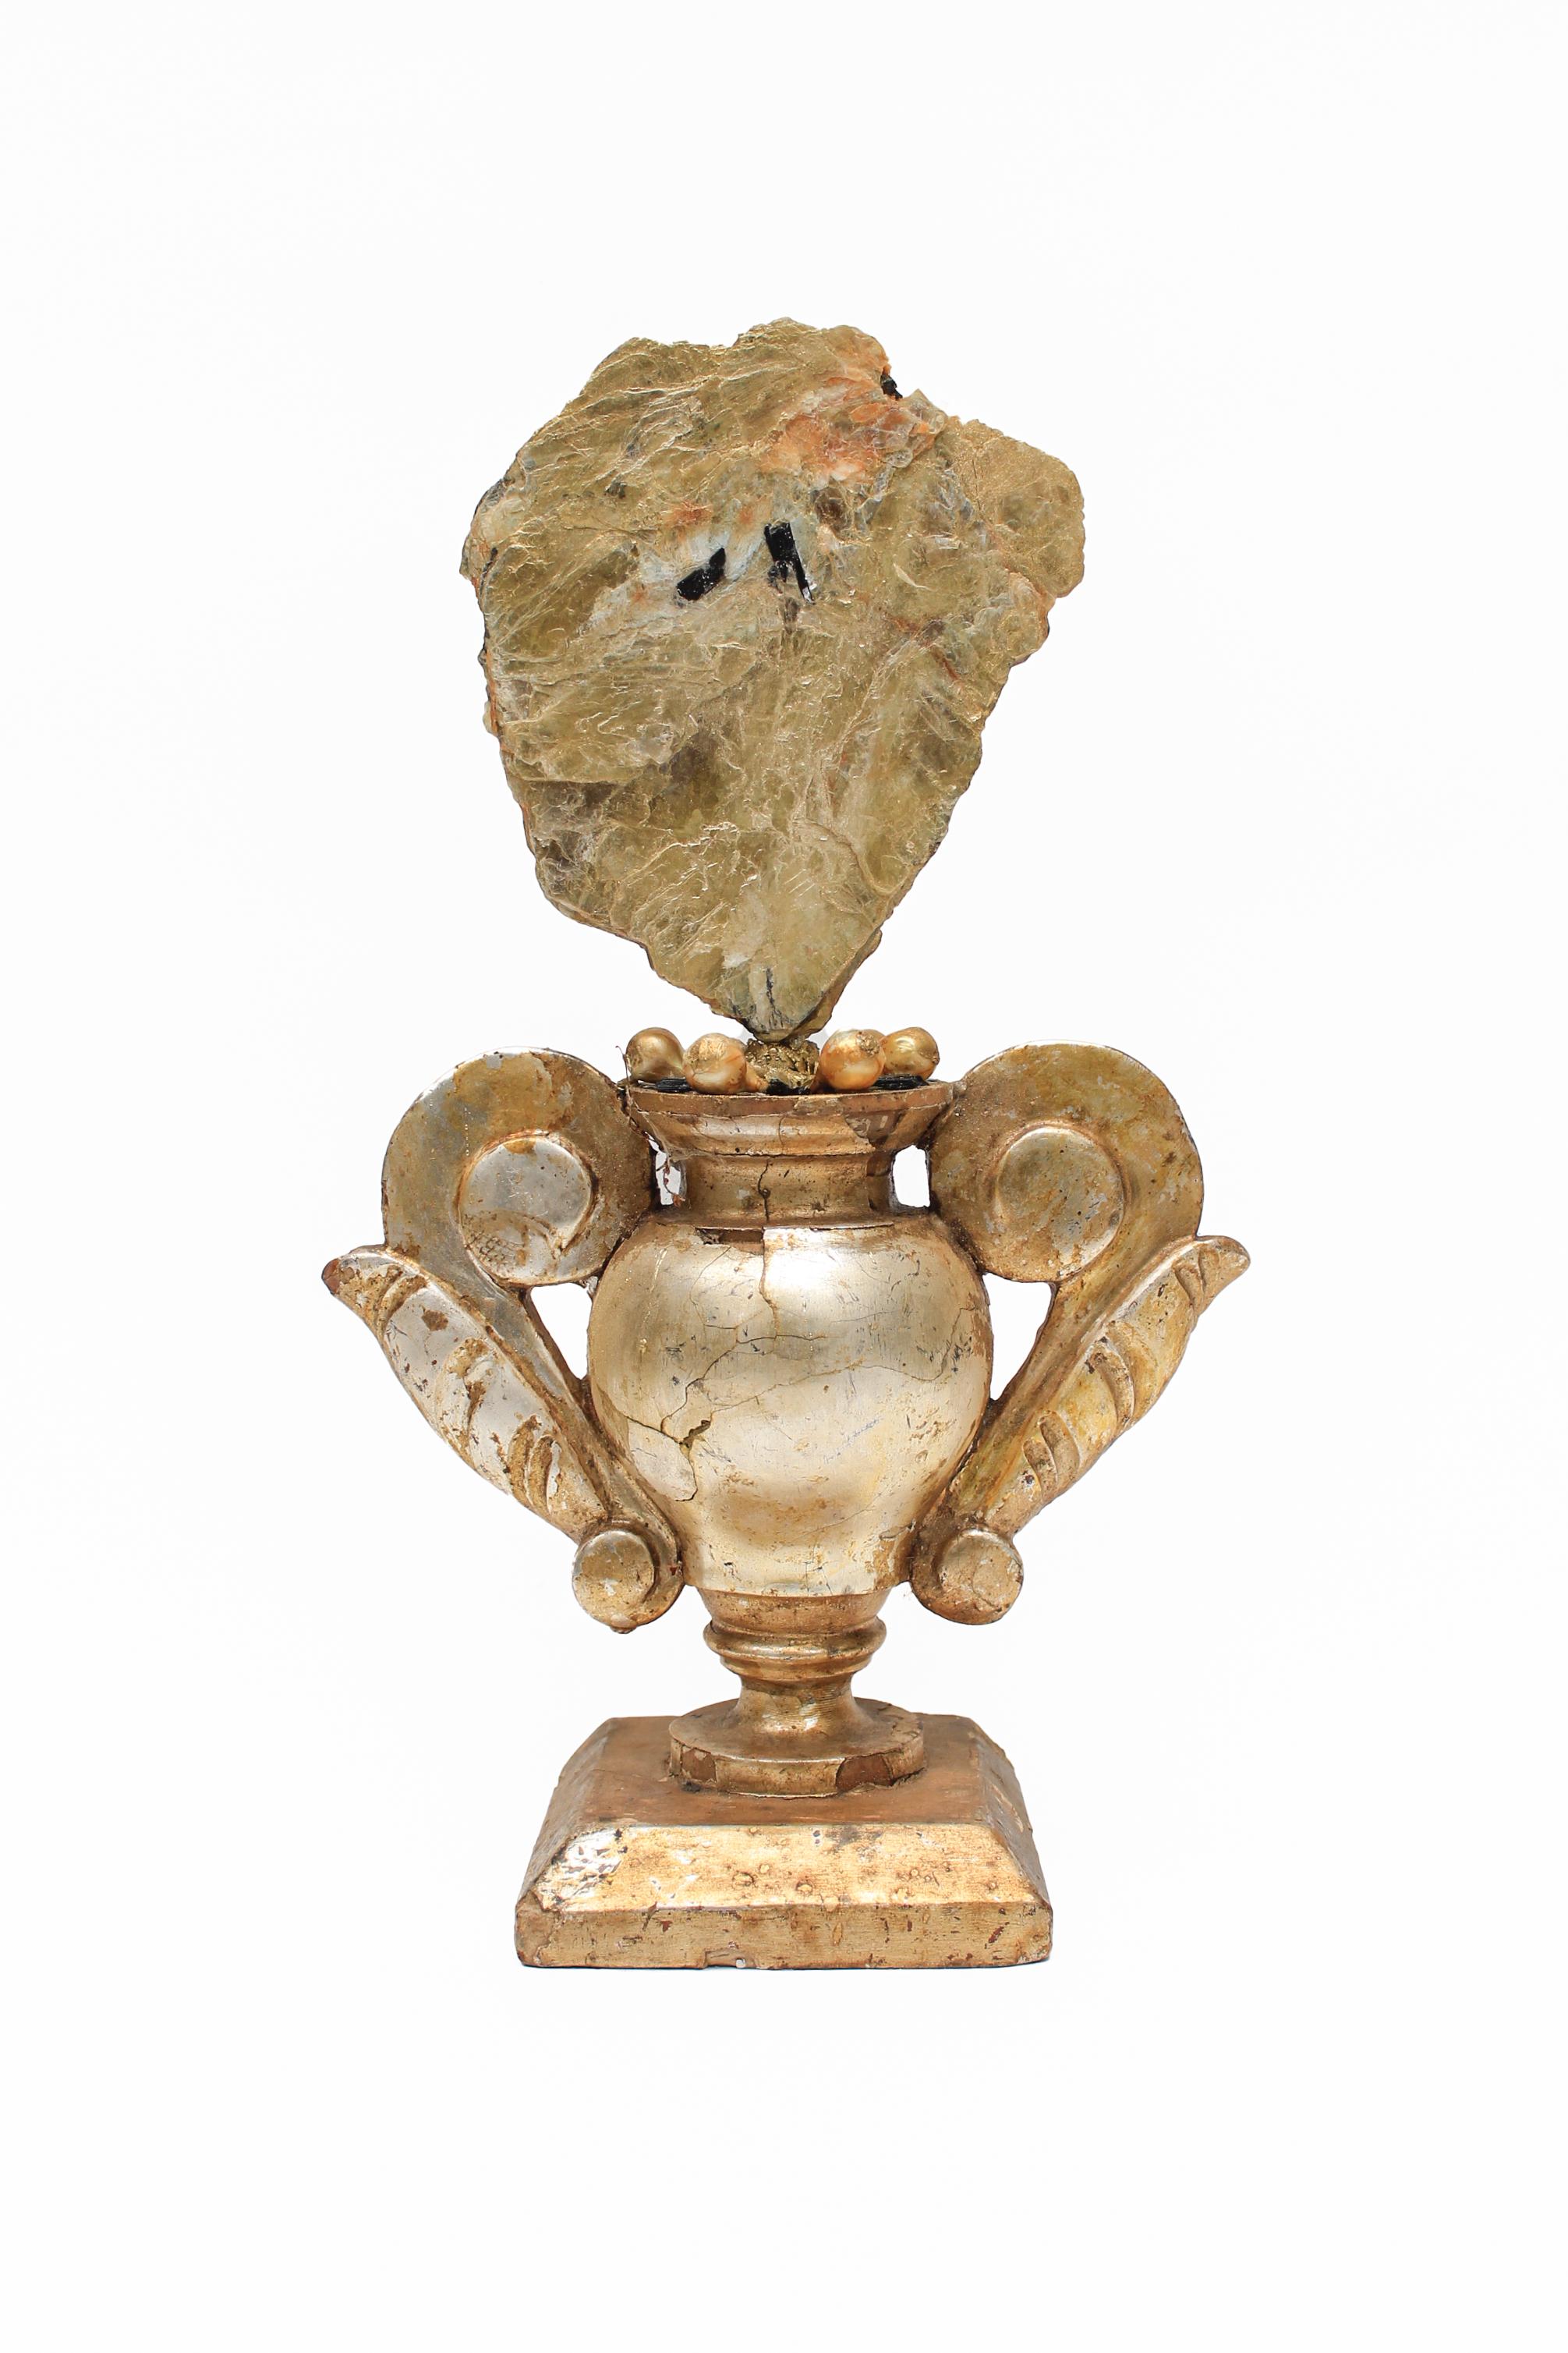 Sculptural vase de la Mecque italien du 18ème siècle monté avec du mica et de la tourmaline et orné de perles baroques de forme naturelle. Les perles de mica et de baroque se coordonnent parfaitement avec la couleur du vase de la feuille de la